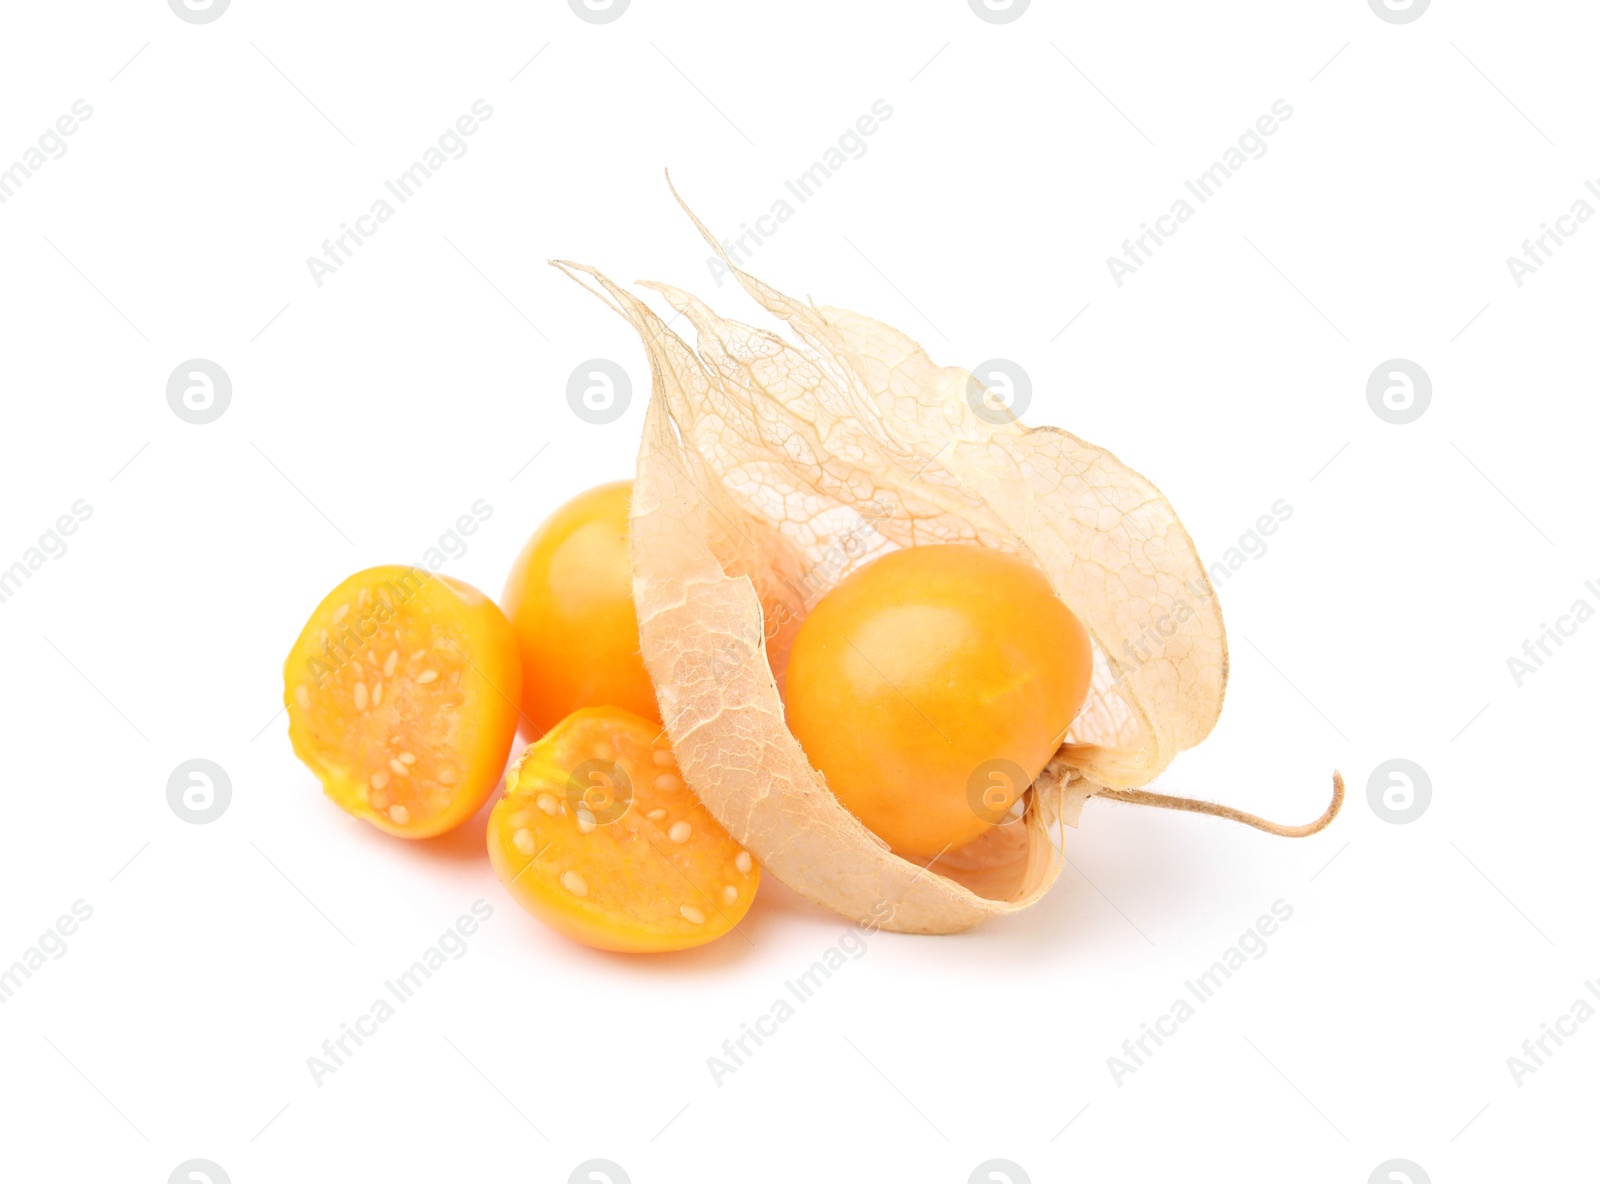 Photo of Ripe orange physalis fruits isolated on white